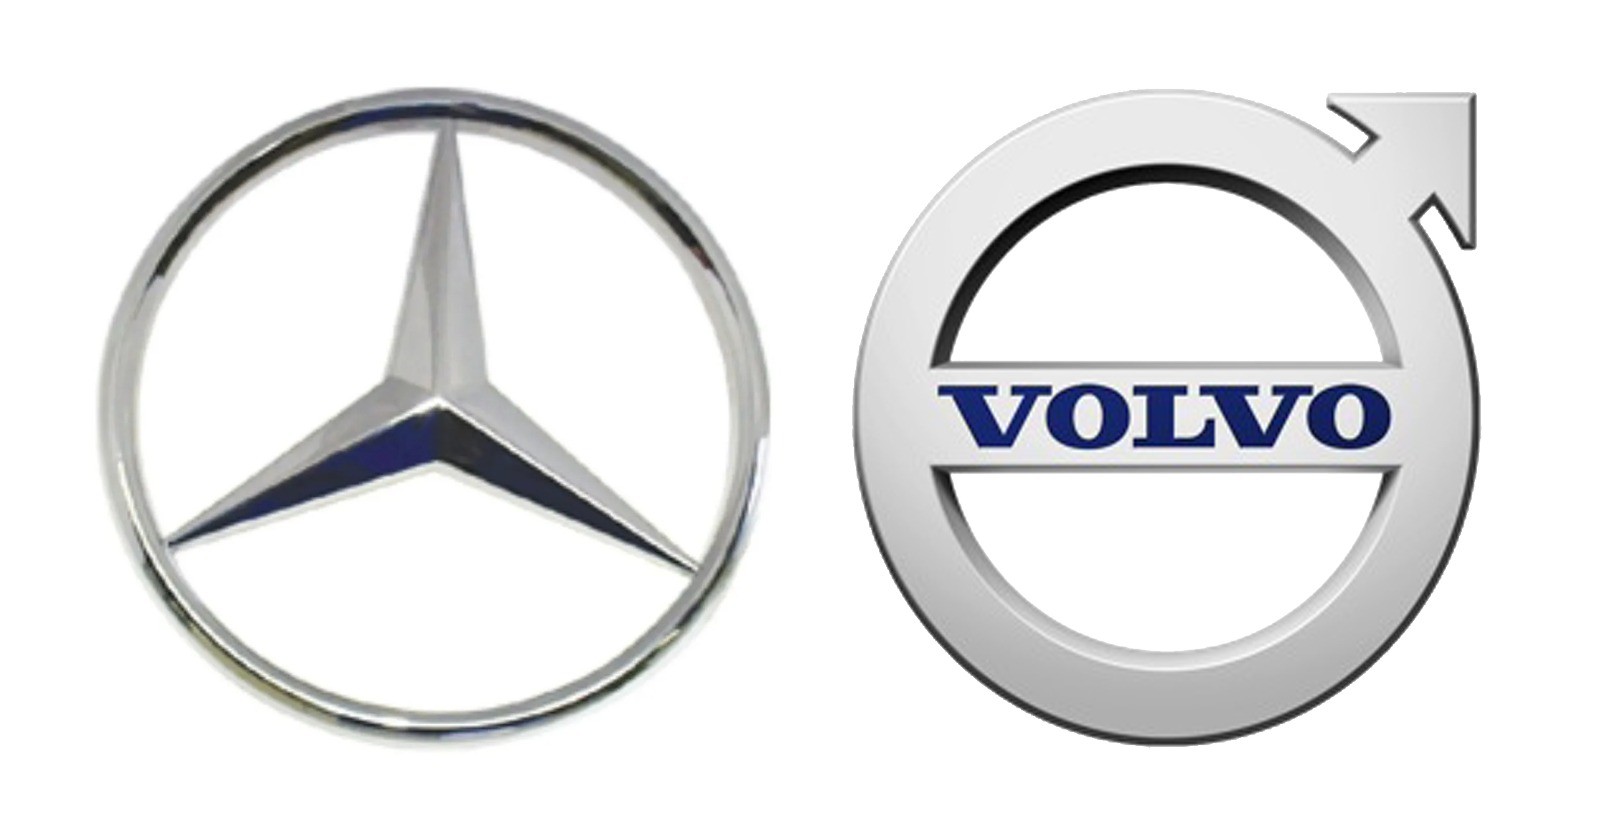 Mercedes-Benz e Volvo assinam parceria para desenvolver veículos pesados